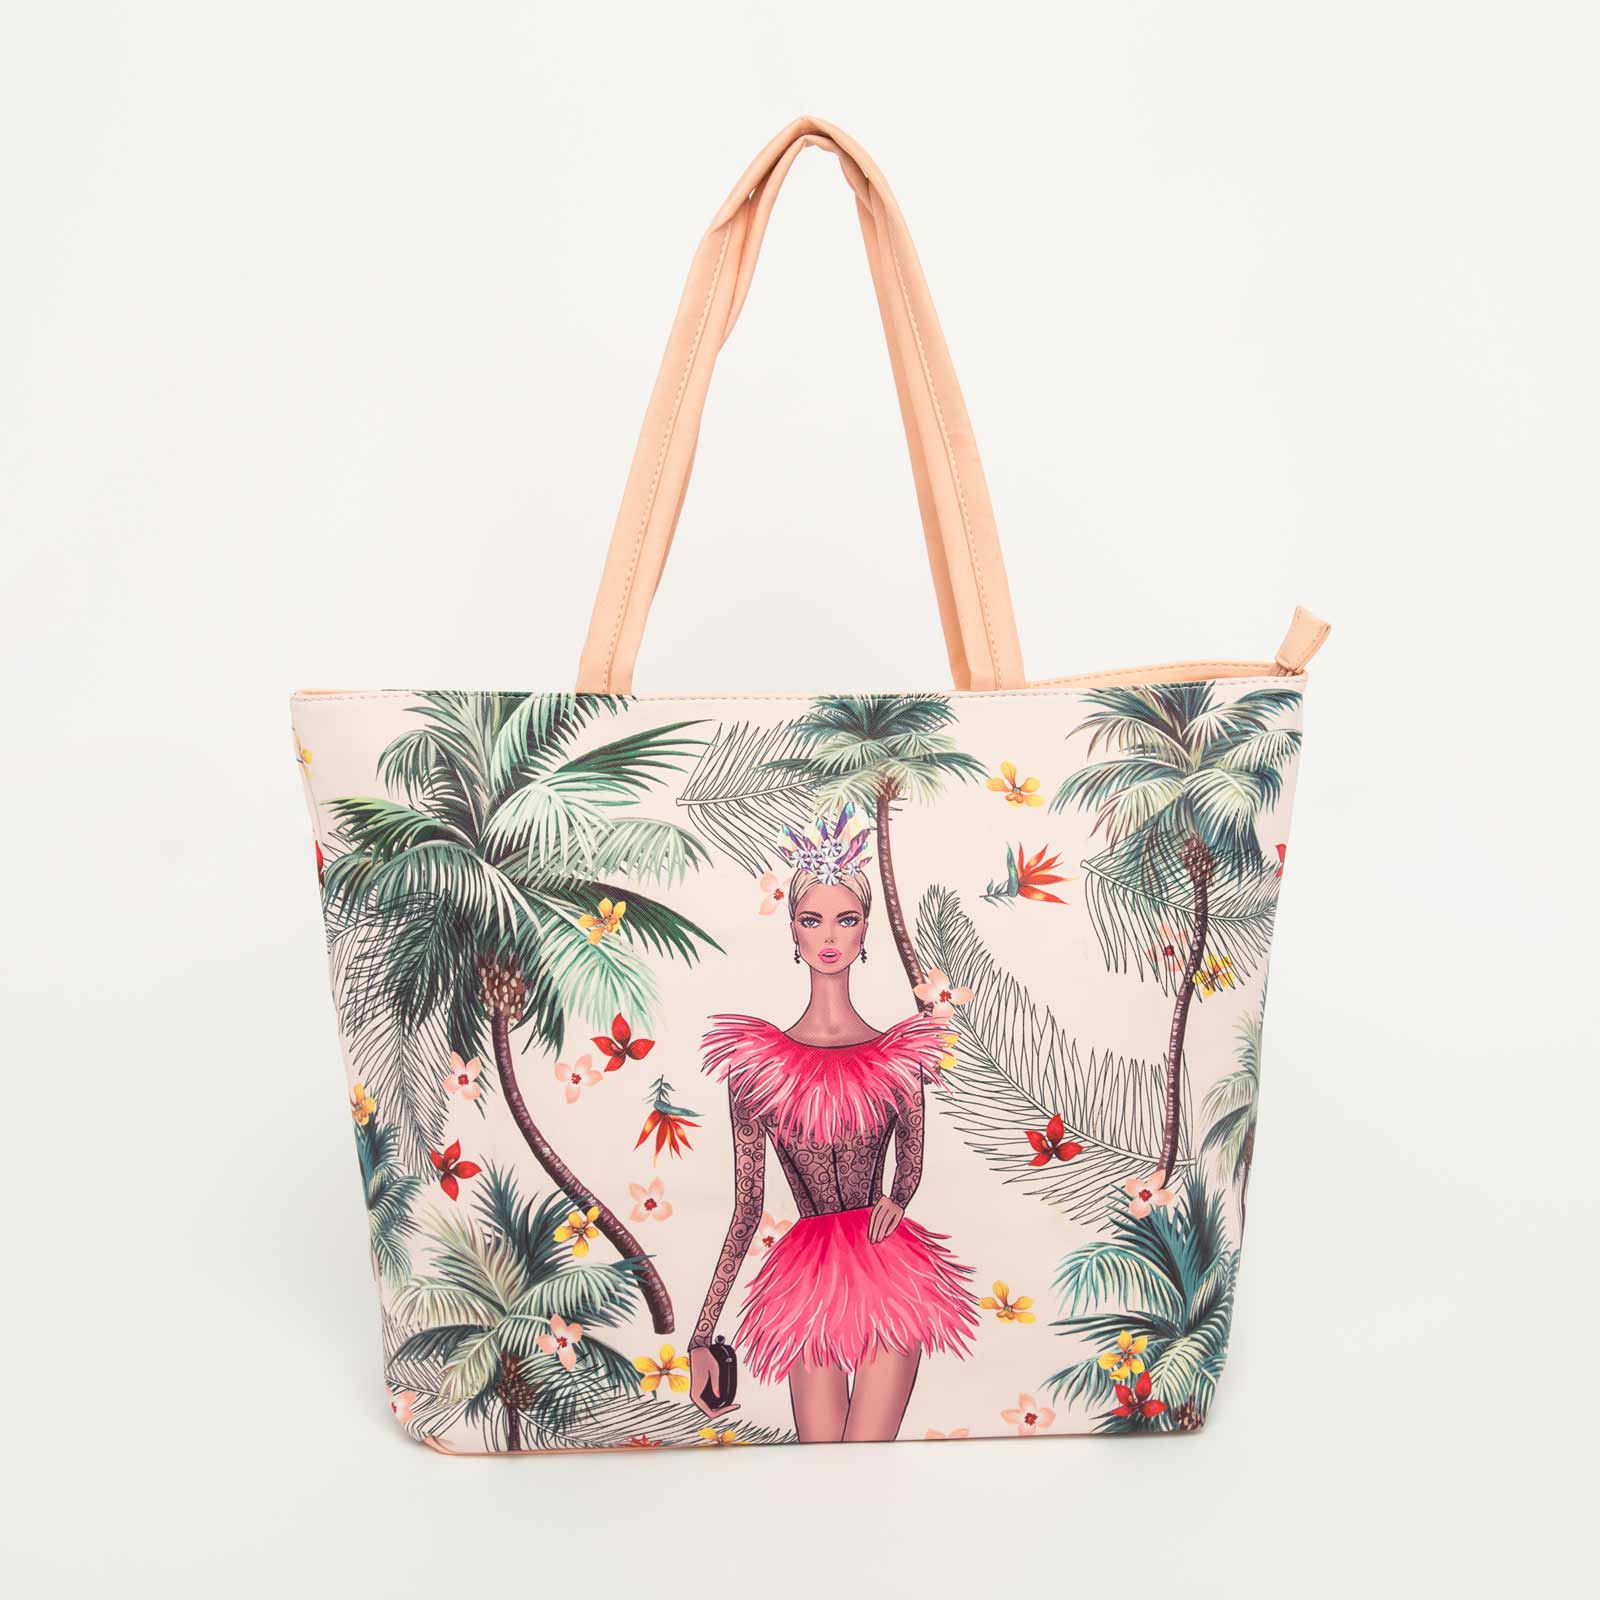 Bolso tote rosado, 33.5 cm x 46 cm, diseño mujer y palmeras